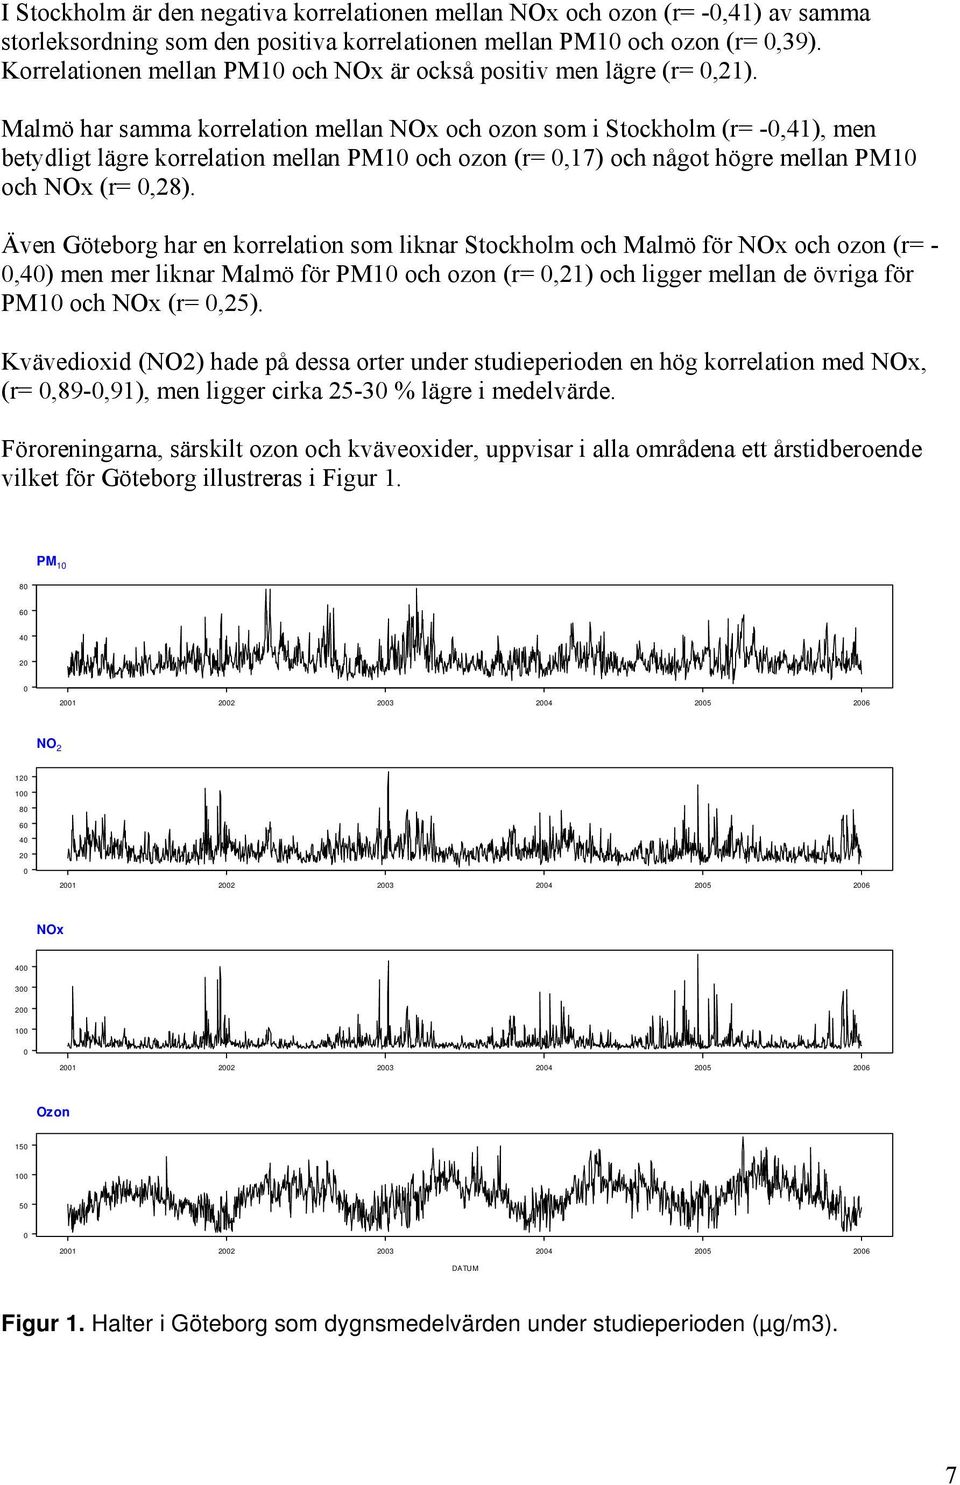 Malmö har samma korrelation mellan NOx och ozon som i Stockholm (r= -0,41), men betydligt lägre korrelation mellan PM10 och ozon (r= 0,17) och något högre mellan PM10 och NOx (r= 0,28).